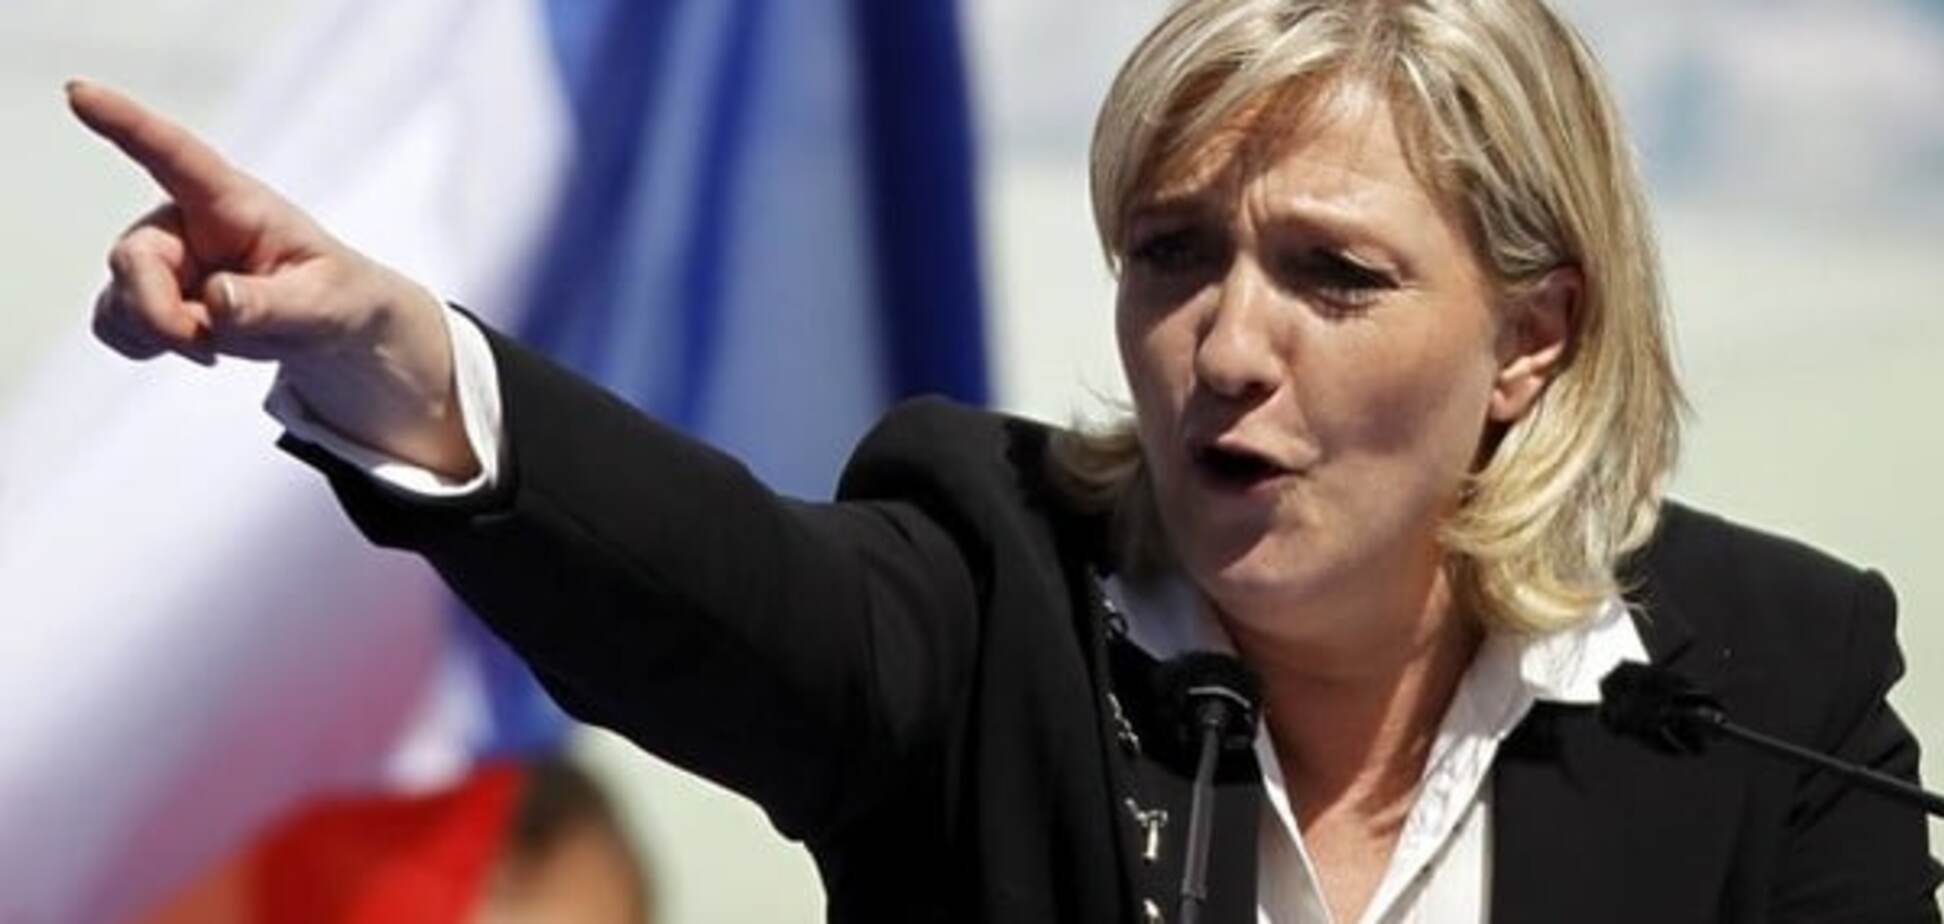 Вибори у Франції: партія Олланда намагається завадити перемозі 'Національного фронту'